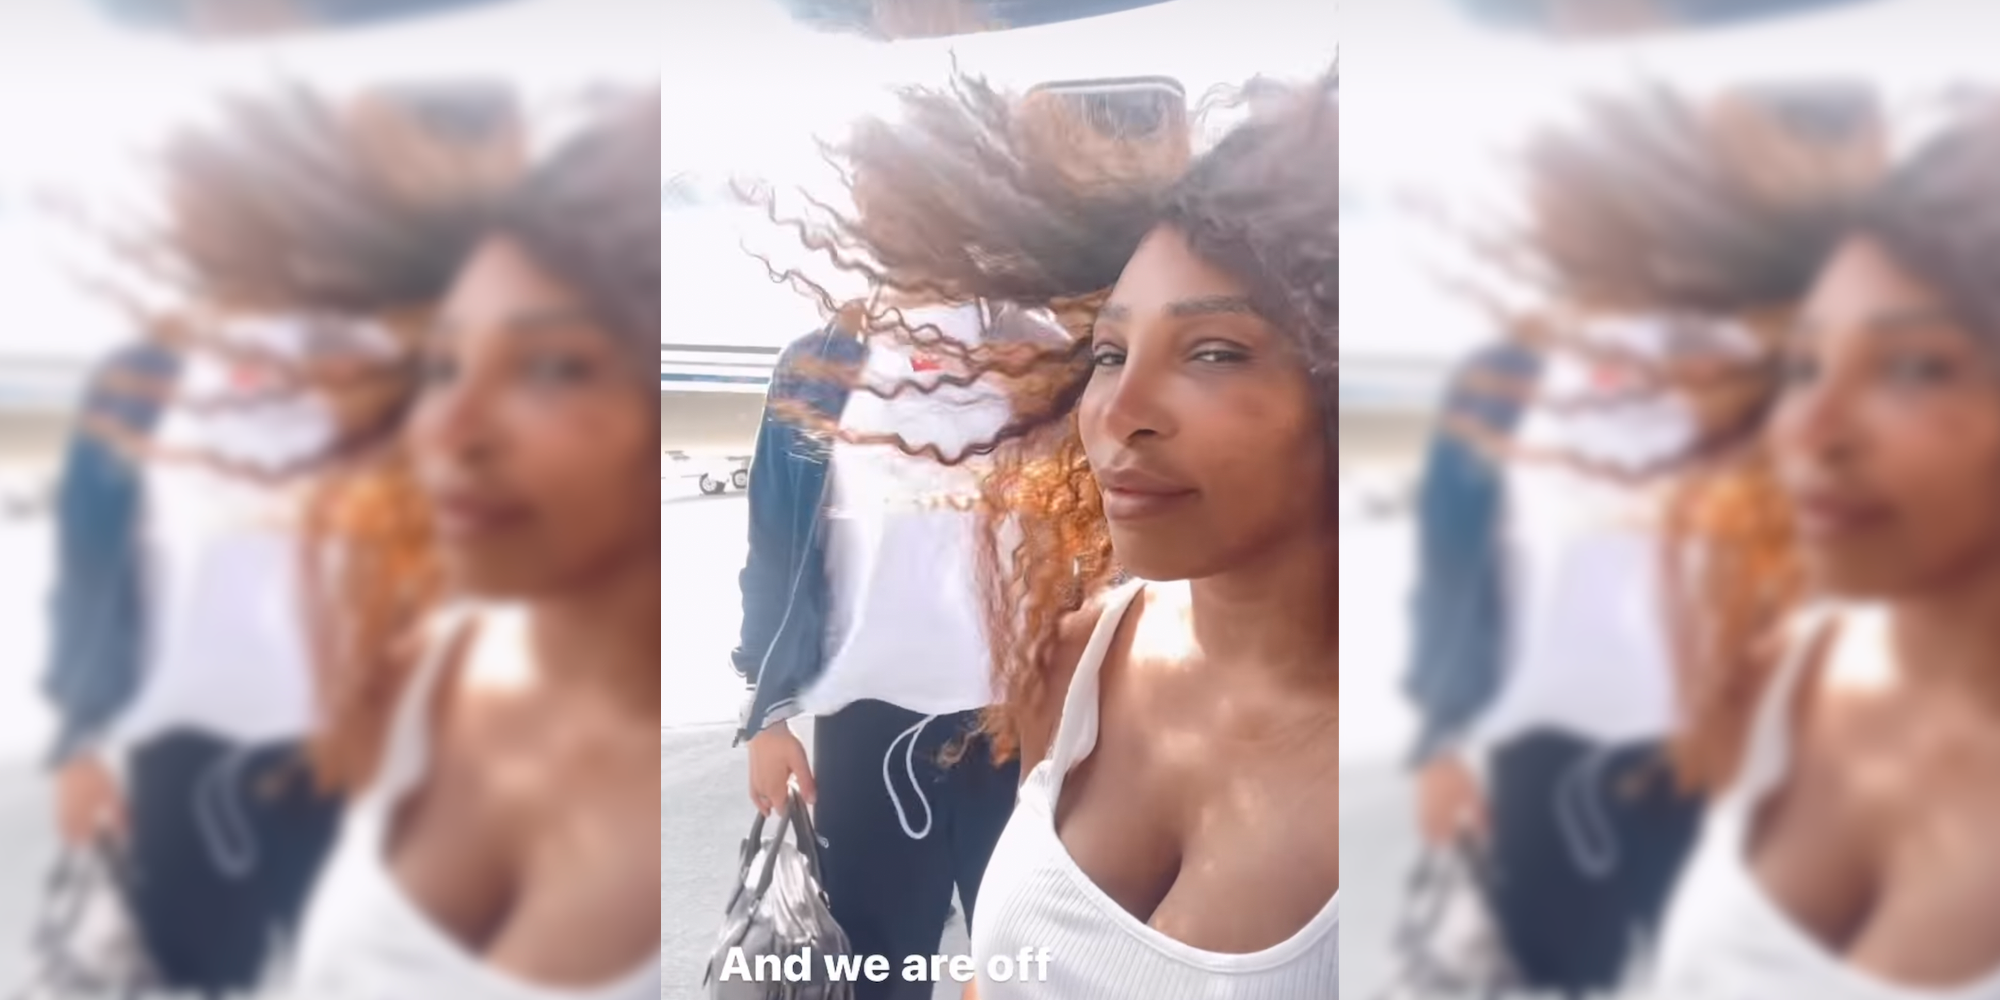 A sus 40 años, la piel de Serena Williams brilla en un nuevo selfie de vacaciones sin maquillaje con su marido Alexis Ohanian en Instagram